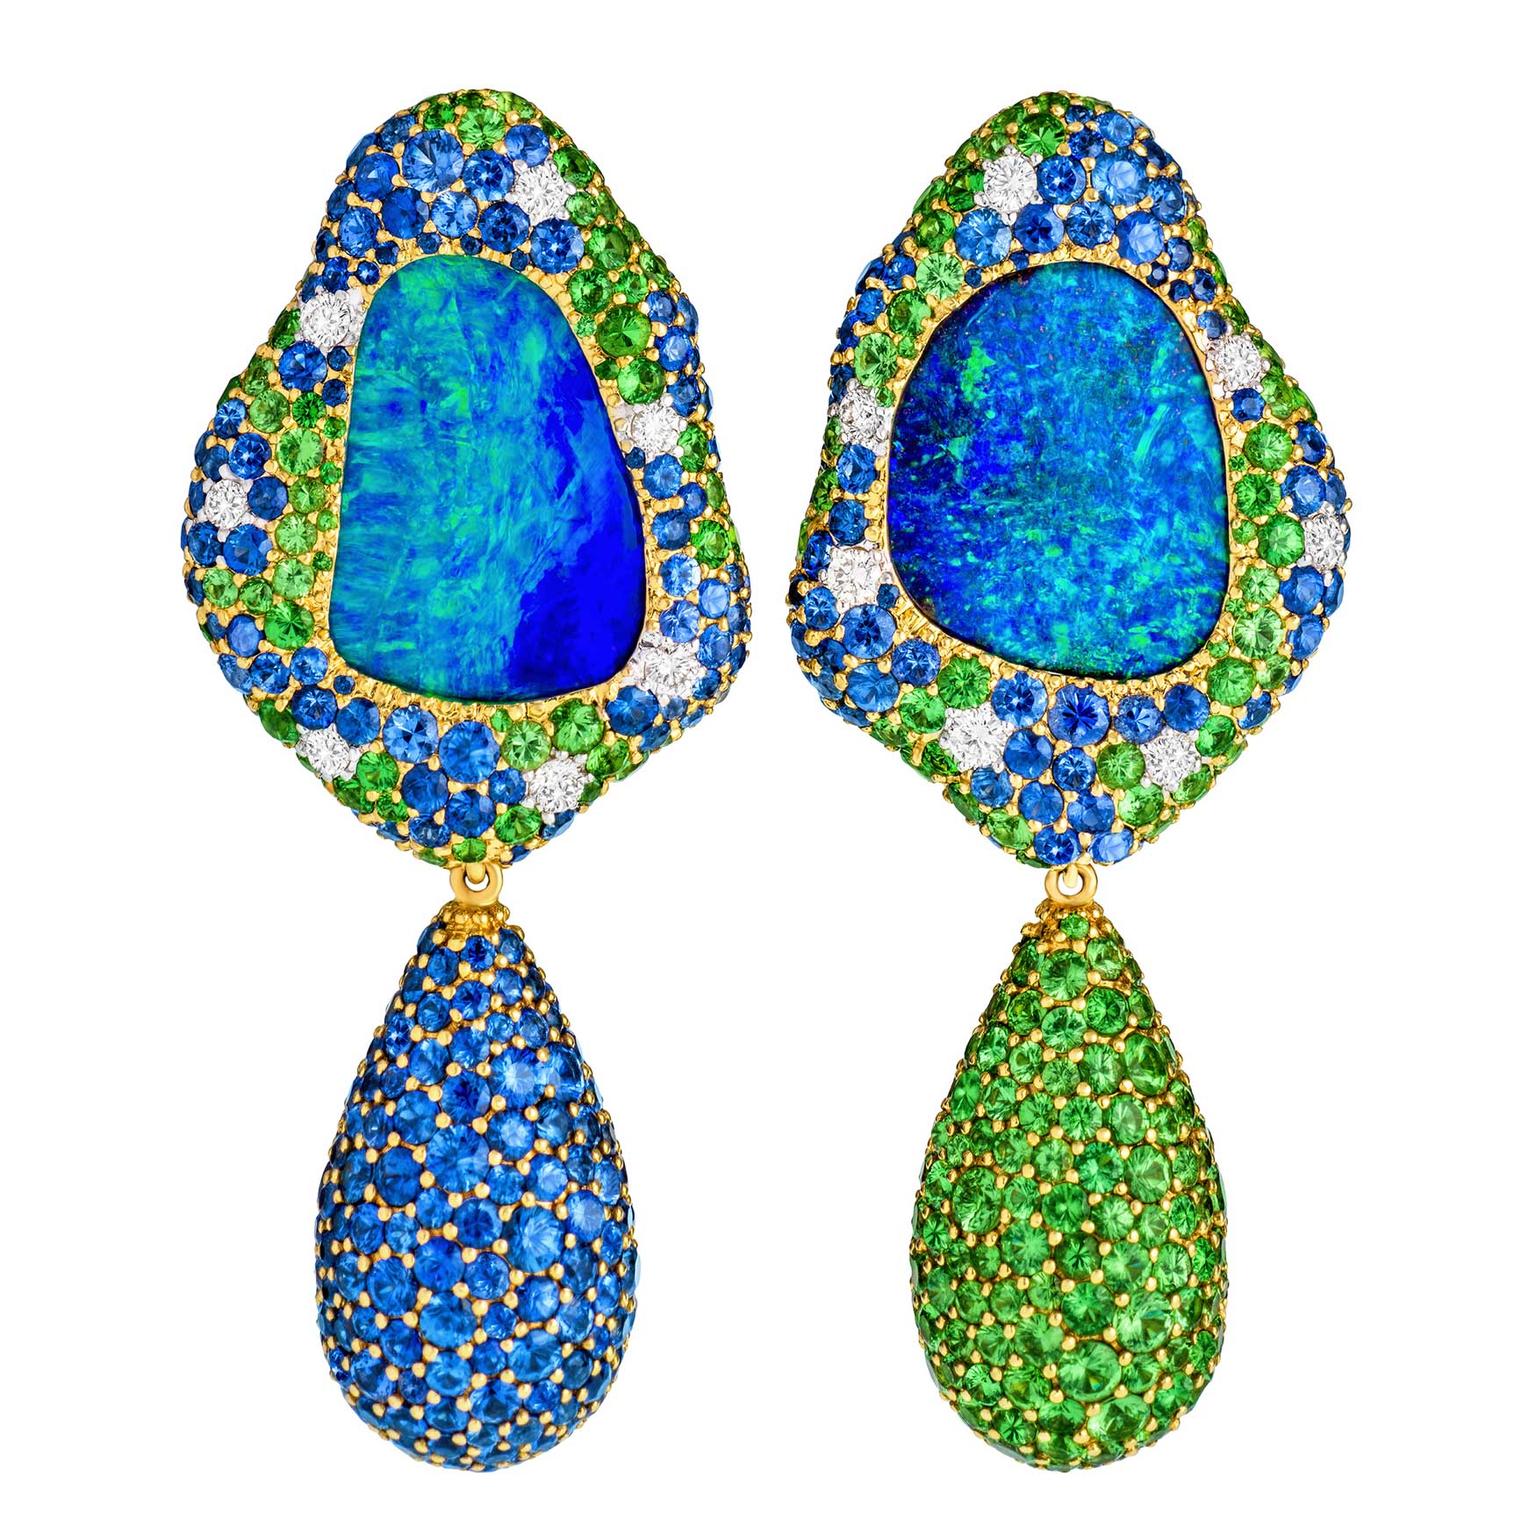 Margot McKinney Viridian Australian Lightning Ridge opal earrings with tsavorites and sapphires 